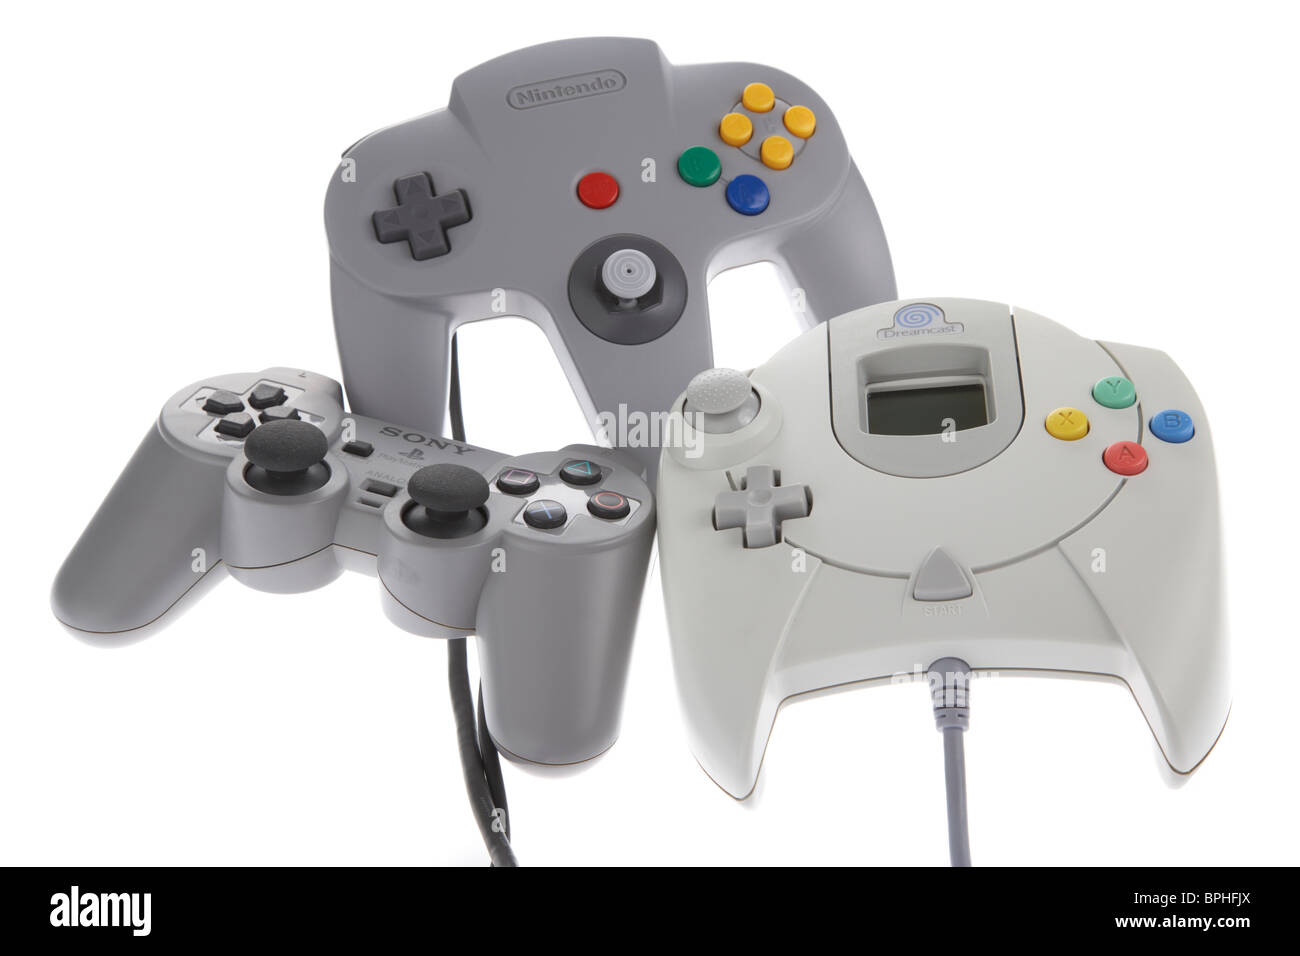 Los controladores originales para varias consolas desde los 90s incluyendo nintendo 64 n64 psone playstation dual shock Sega Dreamcast Foto de stock